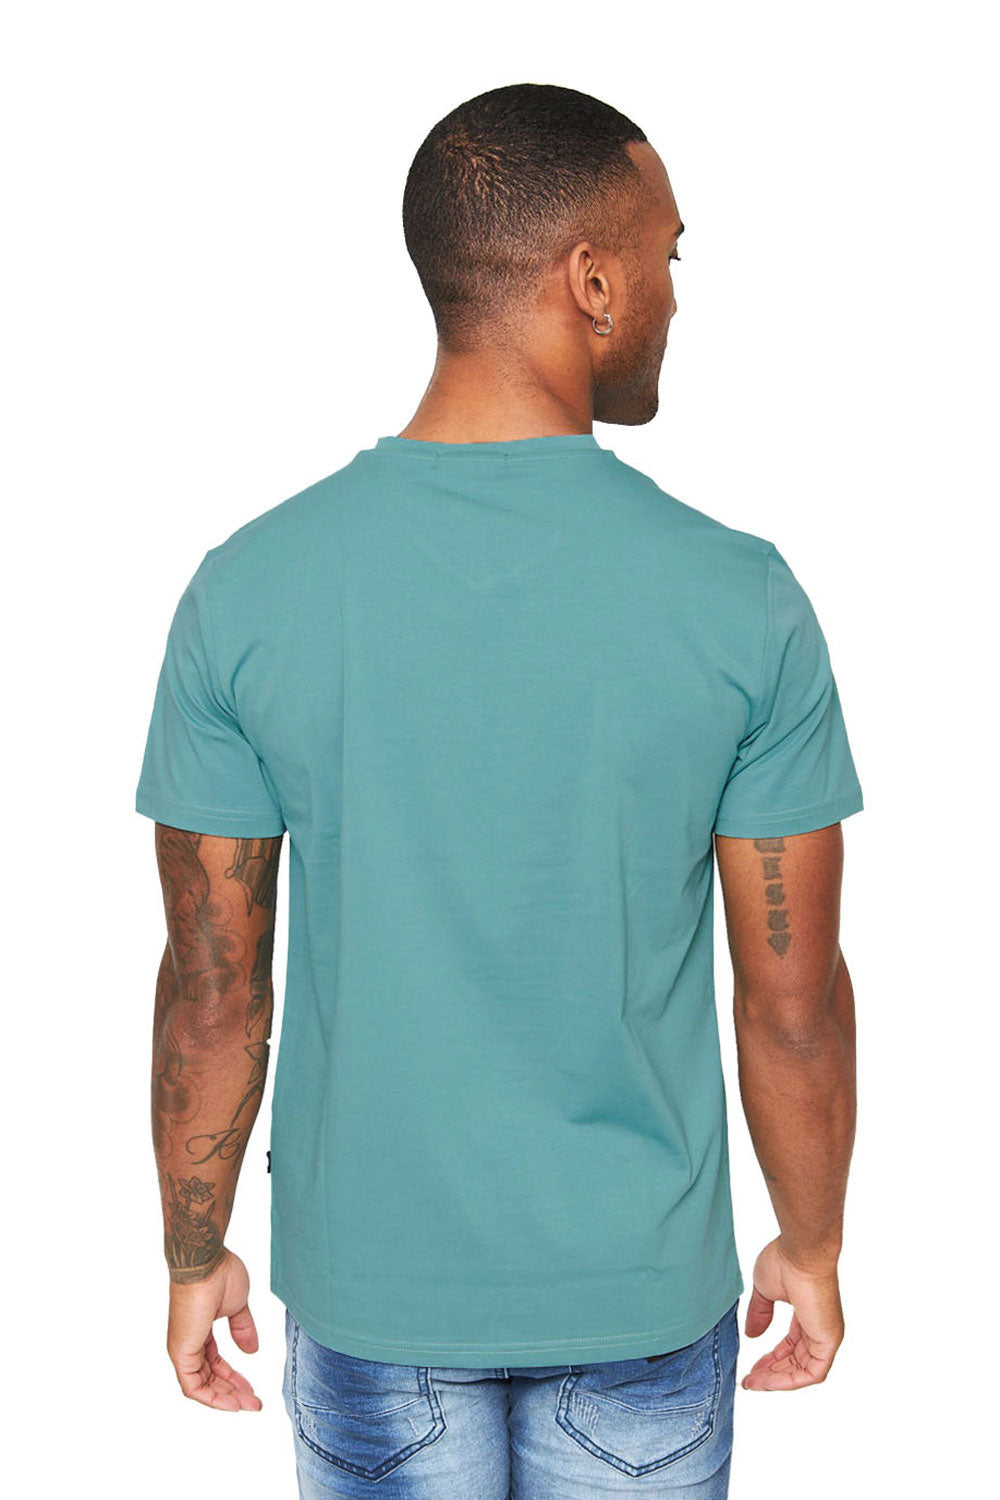 BARABAS Men's Solid Color V-neck T-shirts VTV216  Cayenne